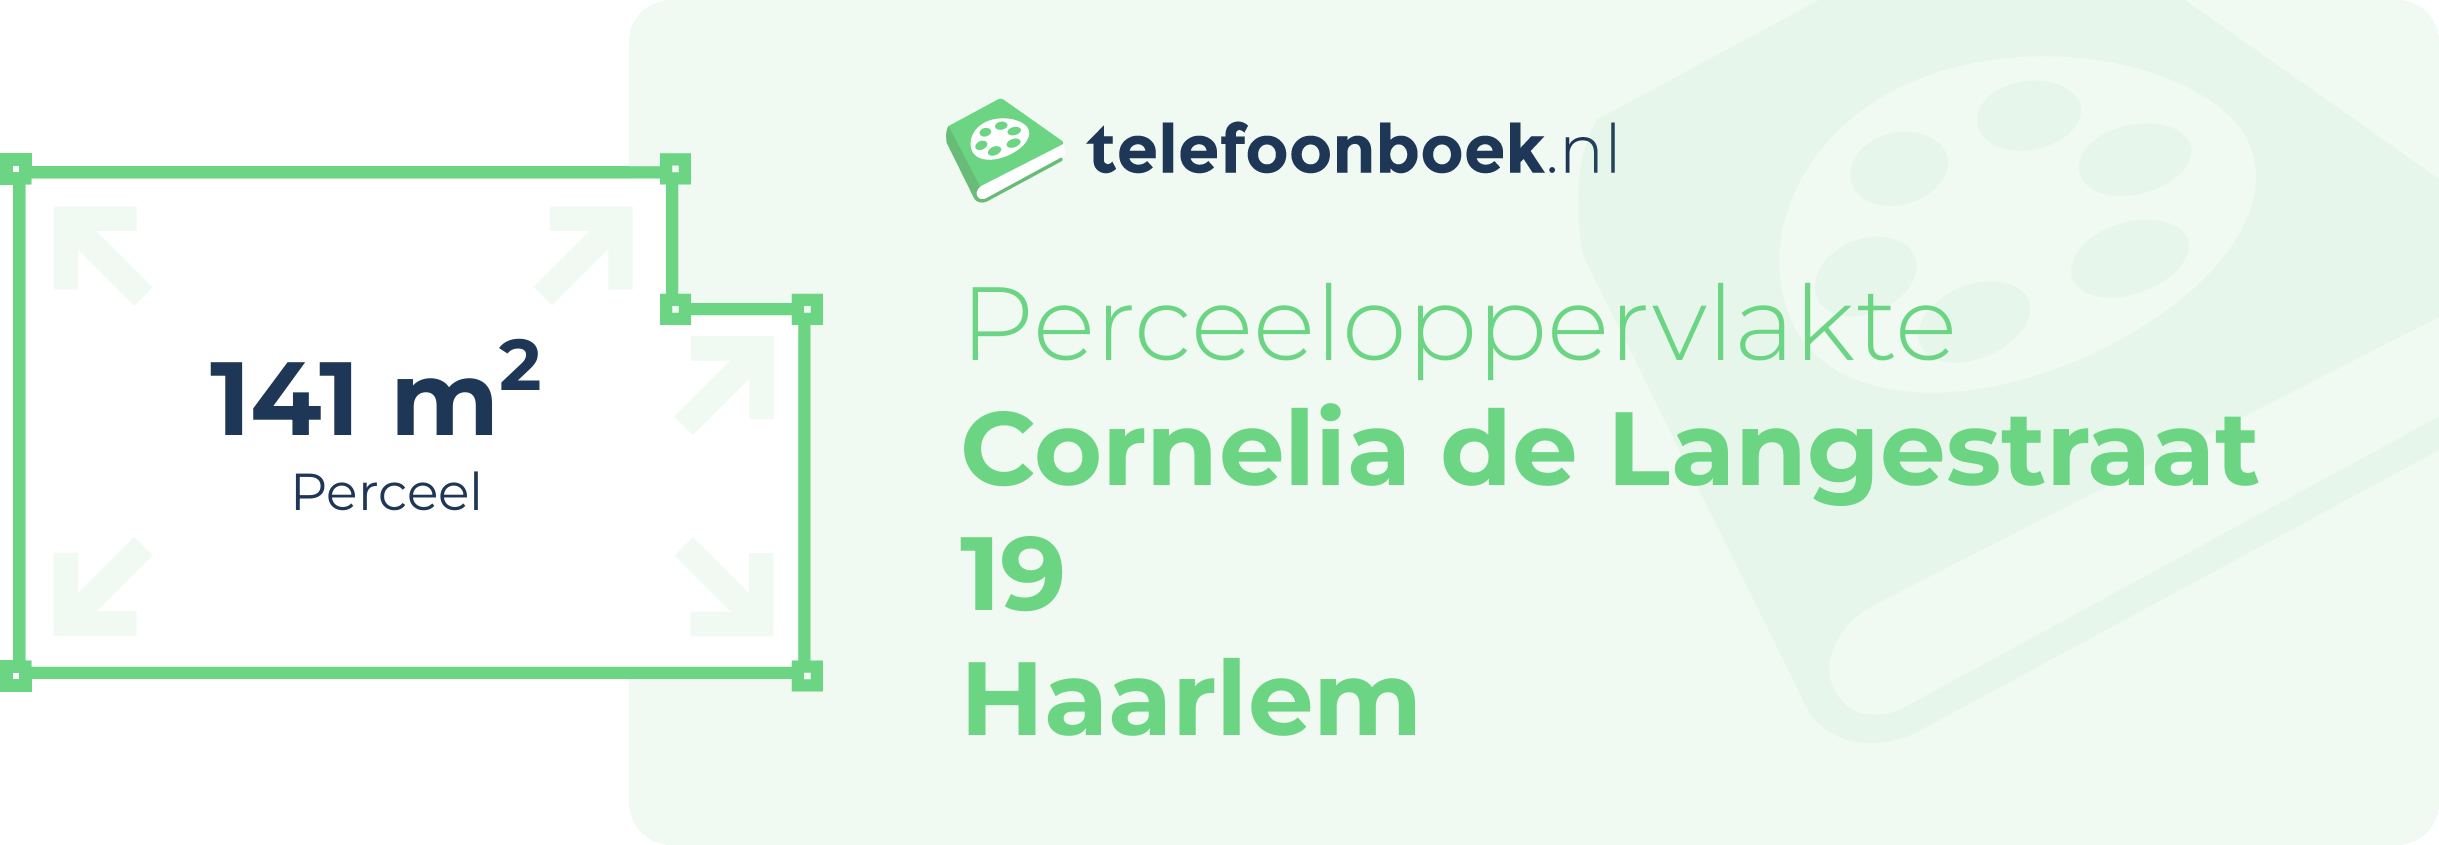 Perceeloppervlakte Cornelia De Langestraat 19 Haarlem